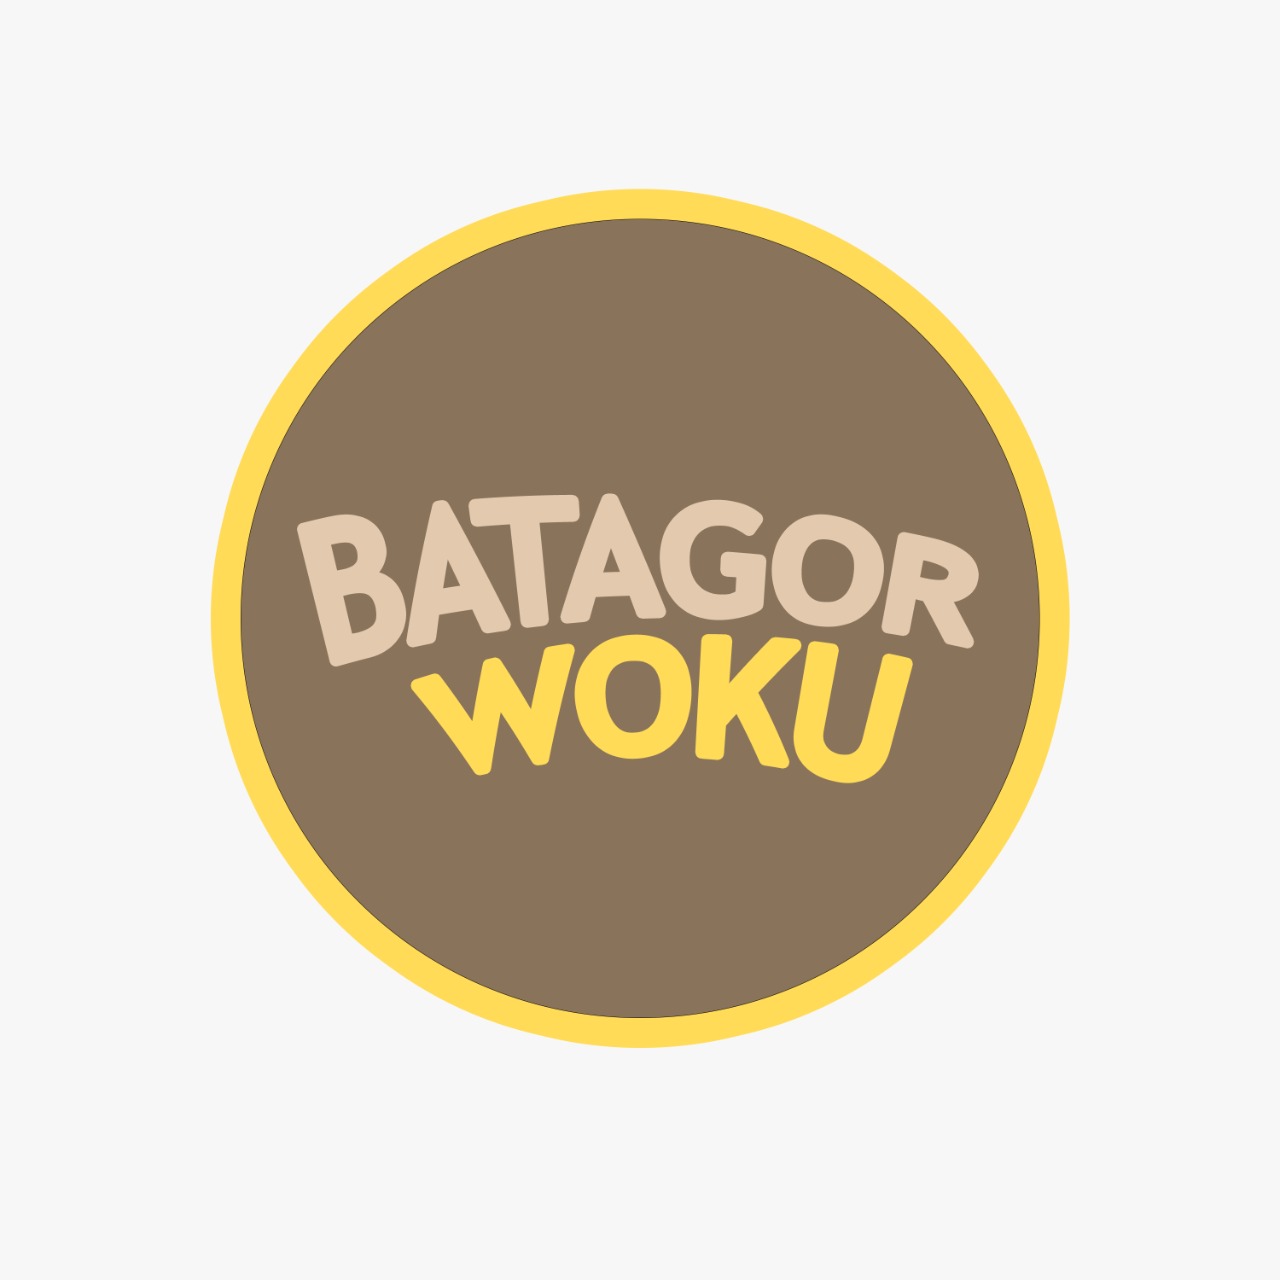 Batagor Woku Hadir Dengan Konsep Berbeda Dari Batagor Khas Bandung Biasanya, Ini Merupakan Inovasi Baru Produk Makanan